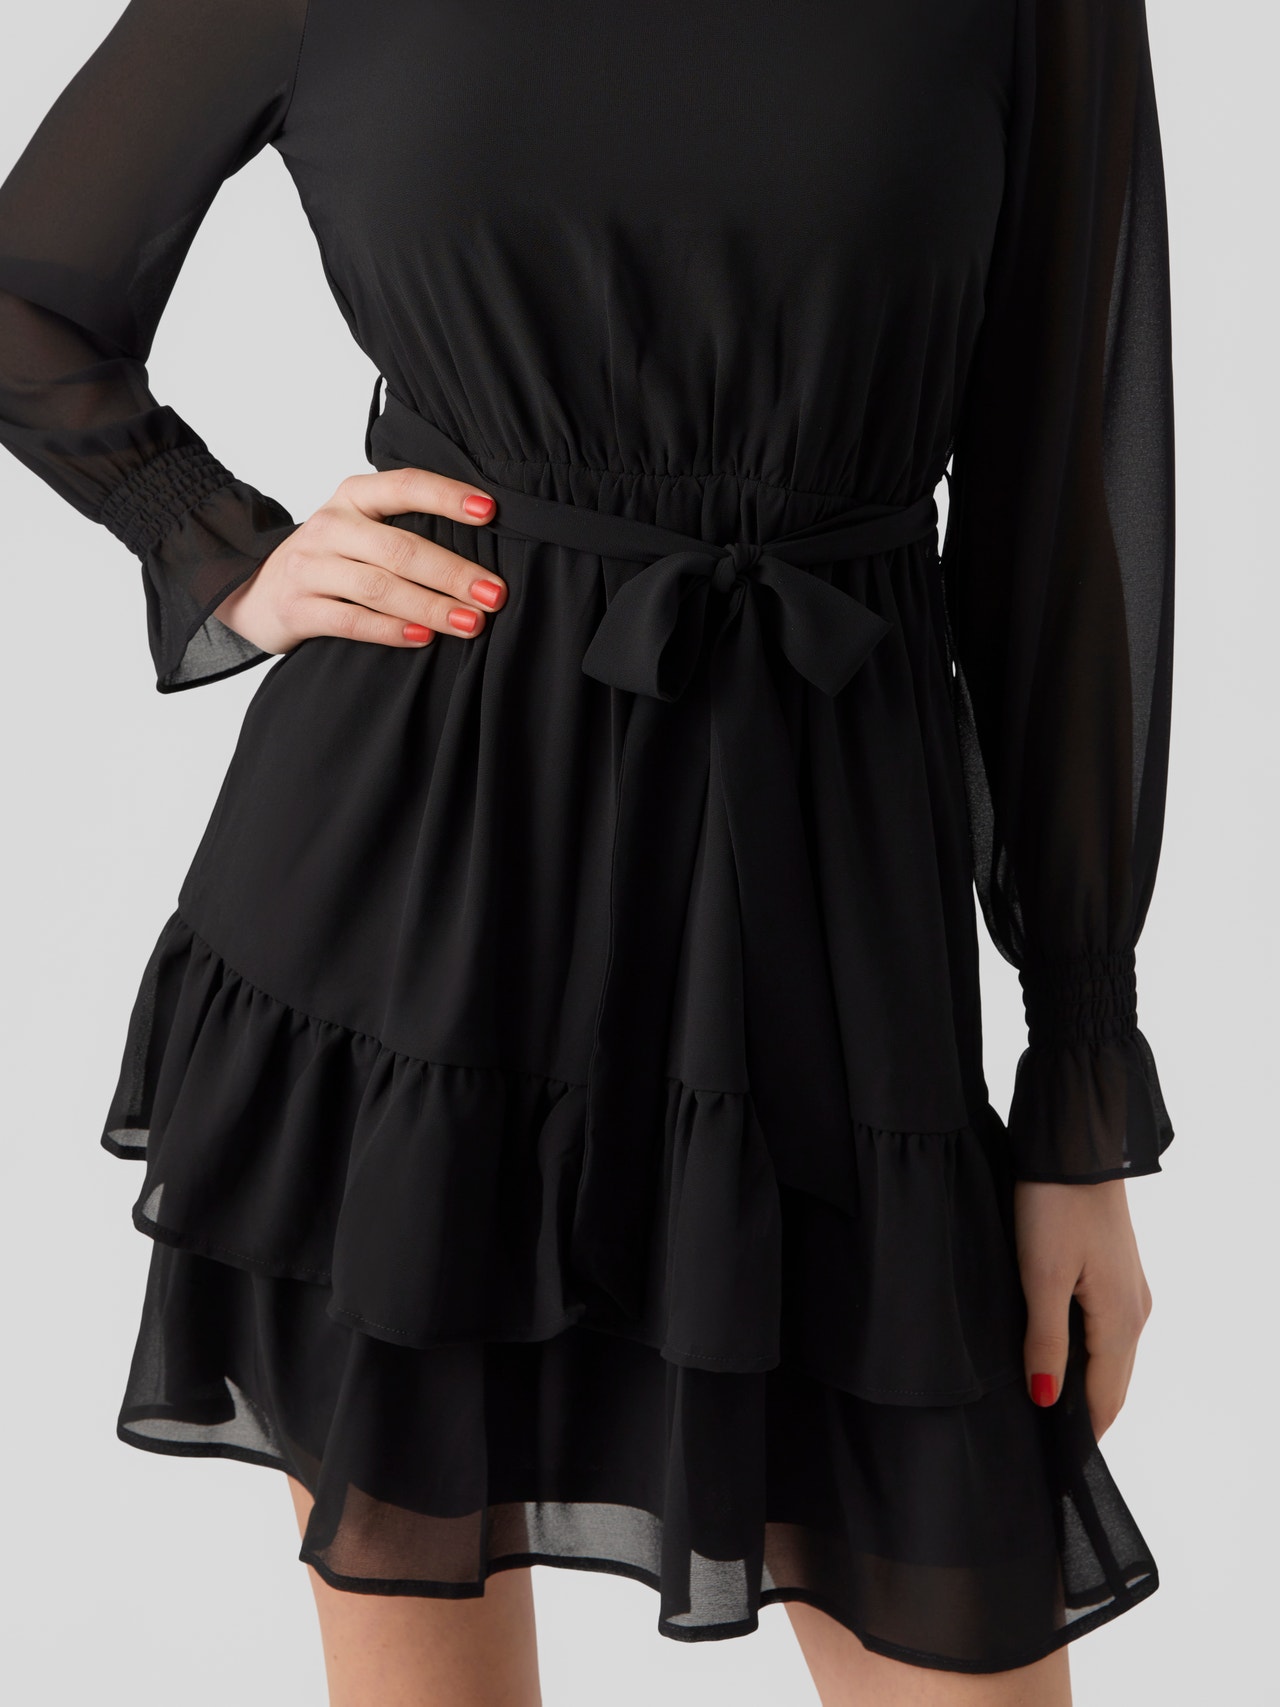 Vero Moda VMANNI Korte jurk -Black - 10293319